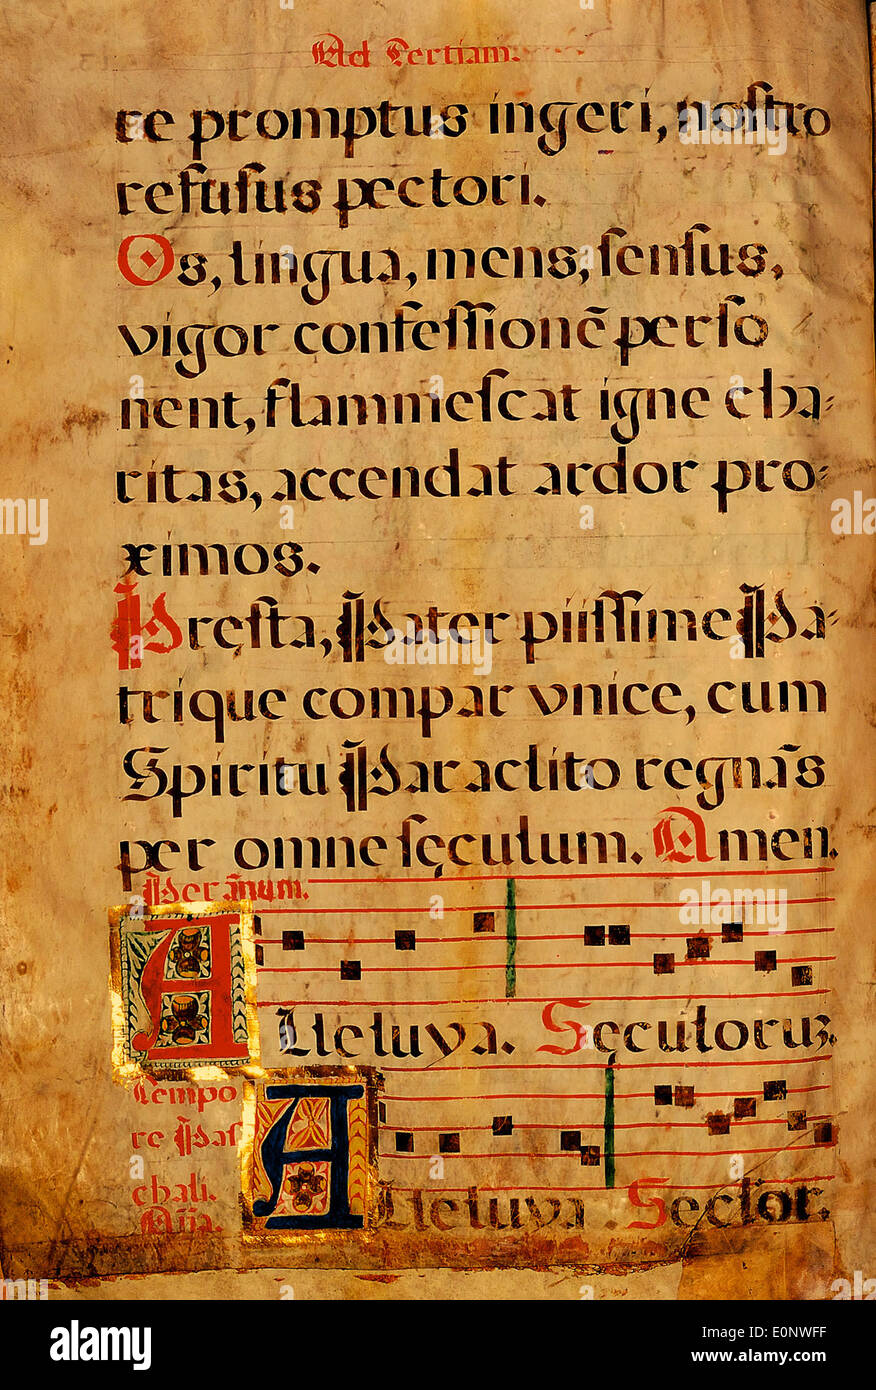 Spanisch-Chant-Manuskript Seite 033 Stockfoto